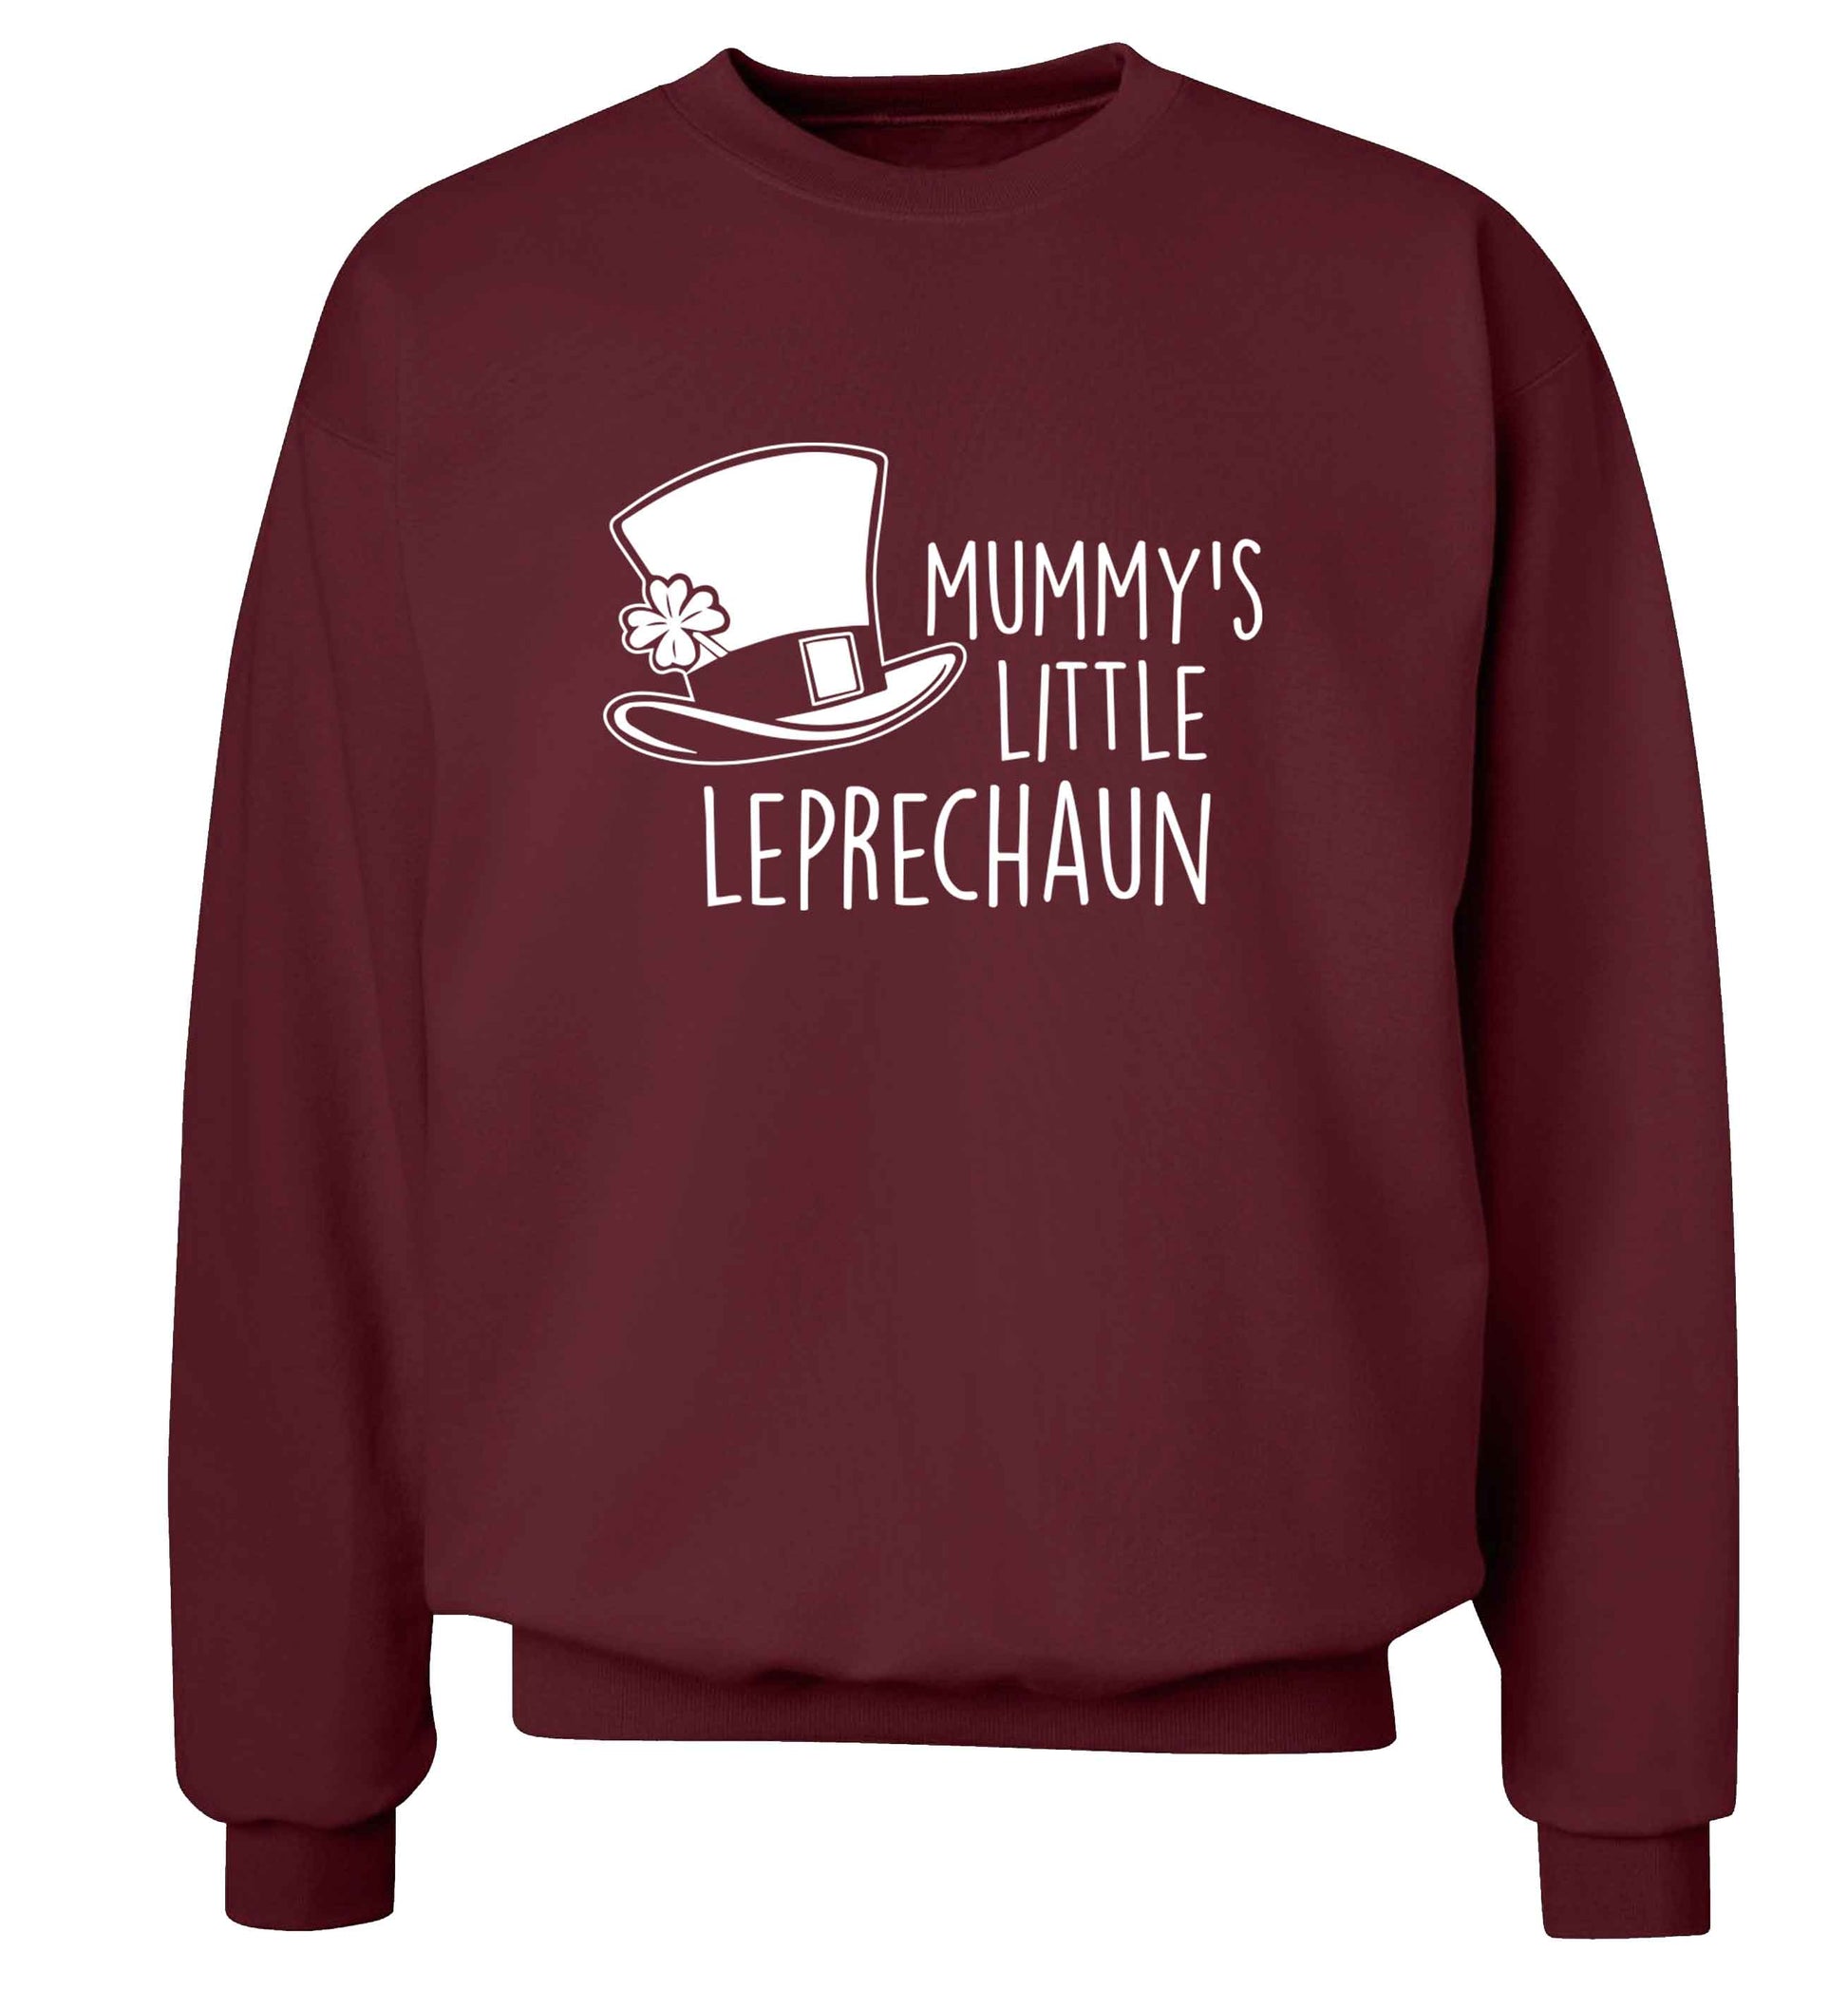 Mummy's little leprechaun adult's unisex maroon sweater 2XL